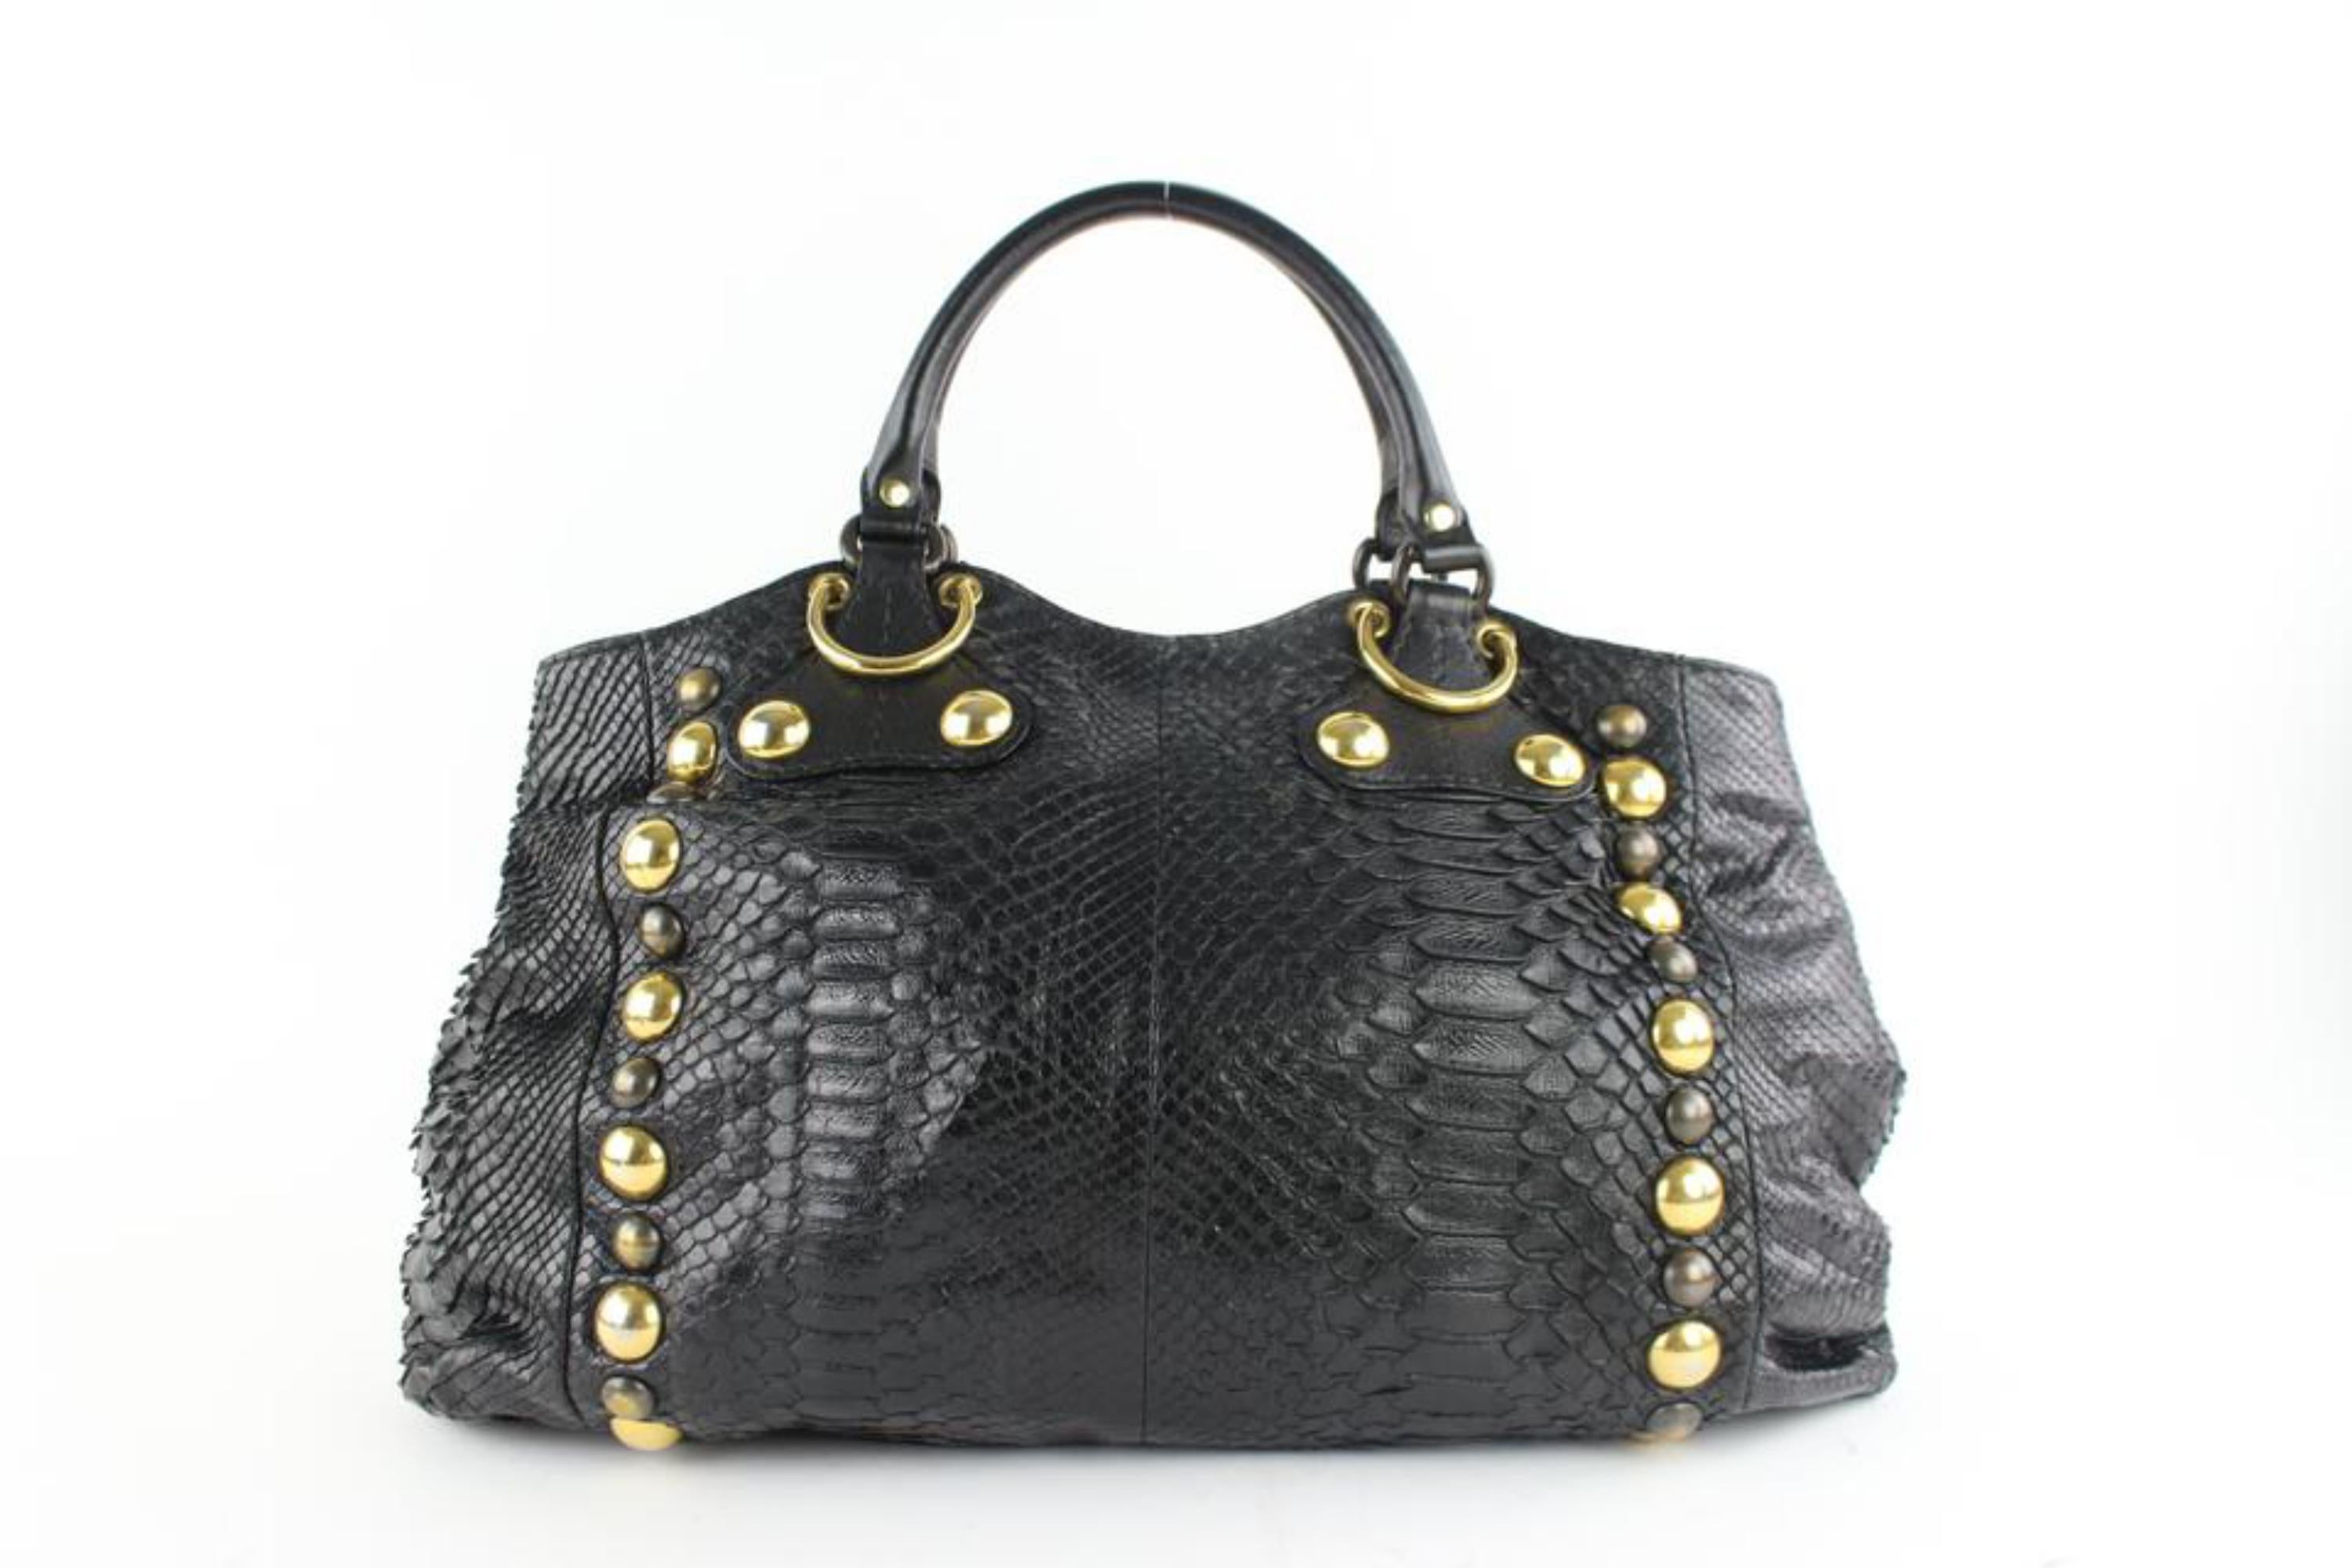 Gucci Suede Fringe Large  Tote 5gz0911 Black Python Skin Leather Shoulder Bag For Sale 1